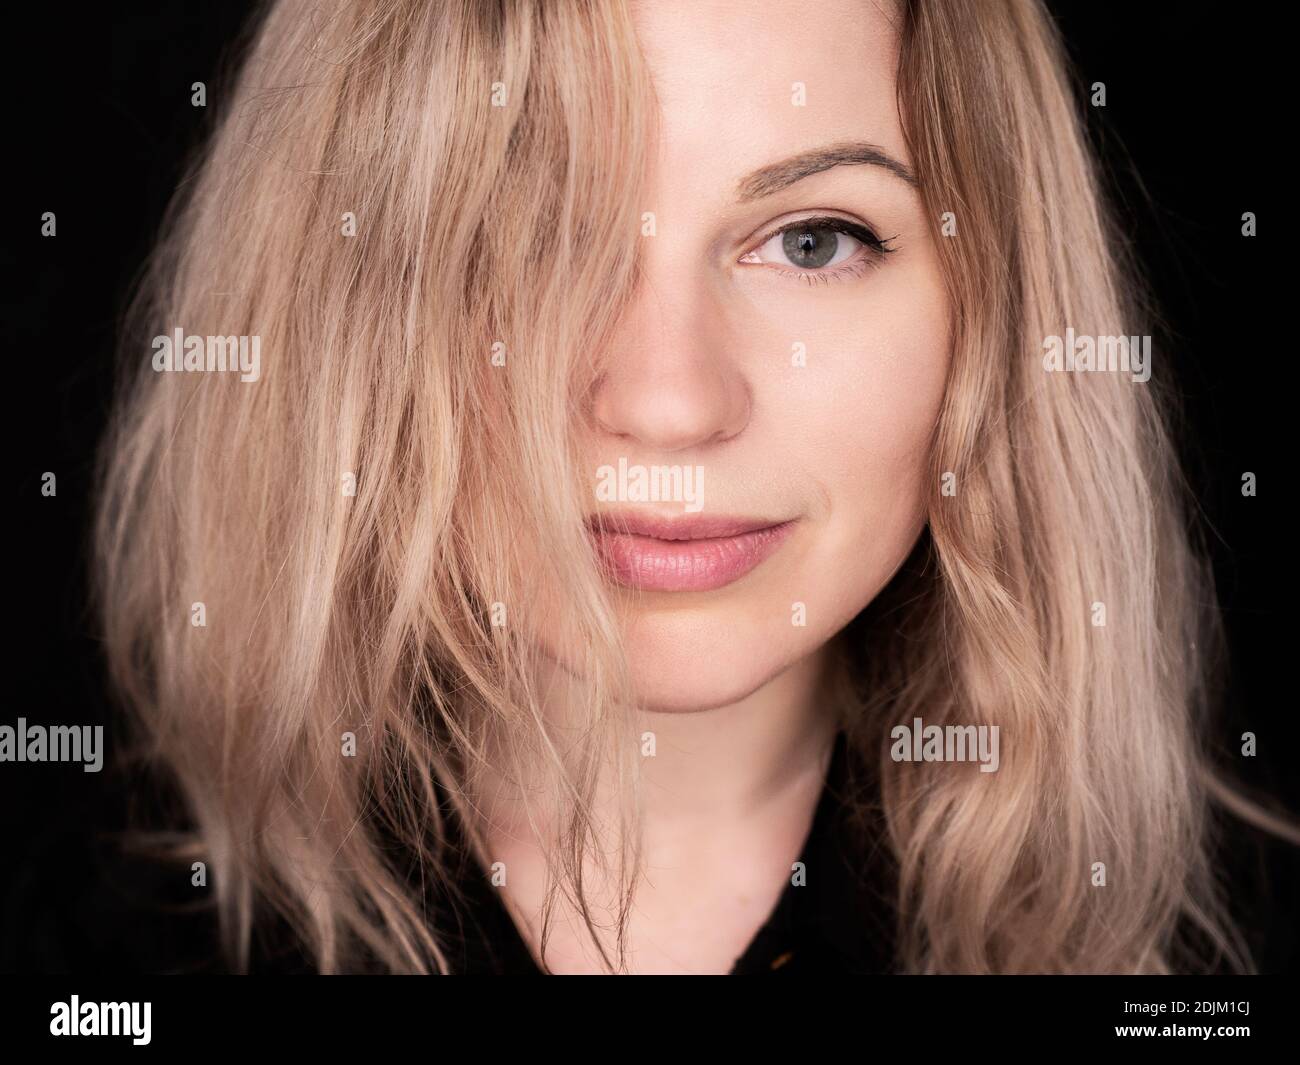 Belle jeune femme polonaise aux cheveux blonds et aux yeux bleus Banque D'Images